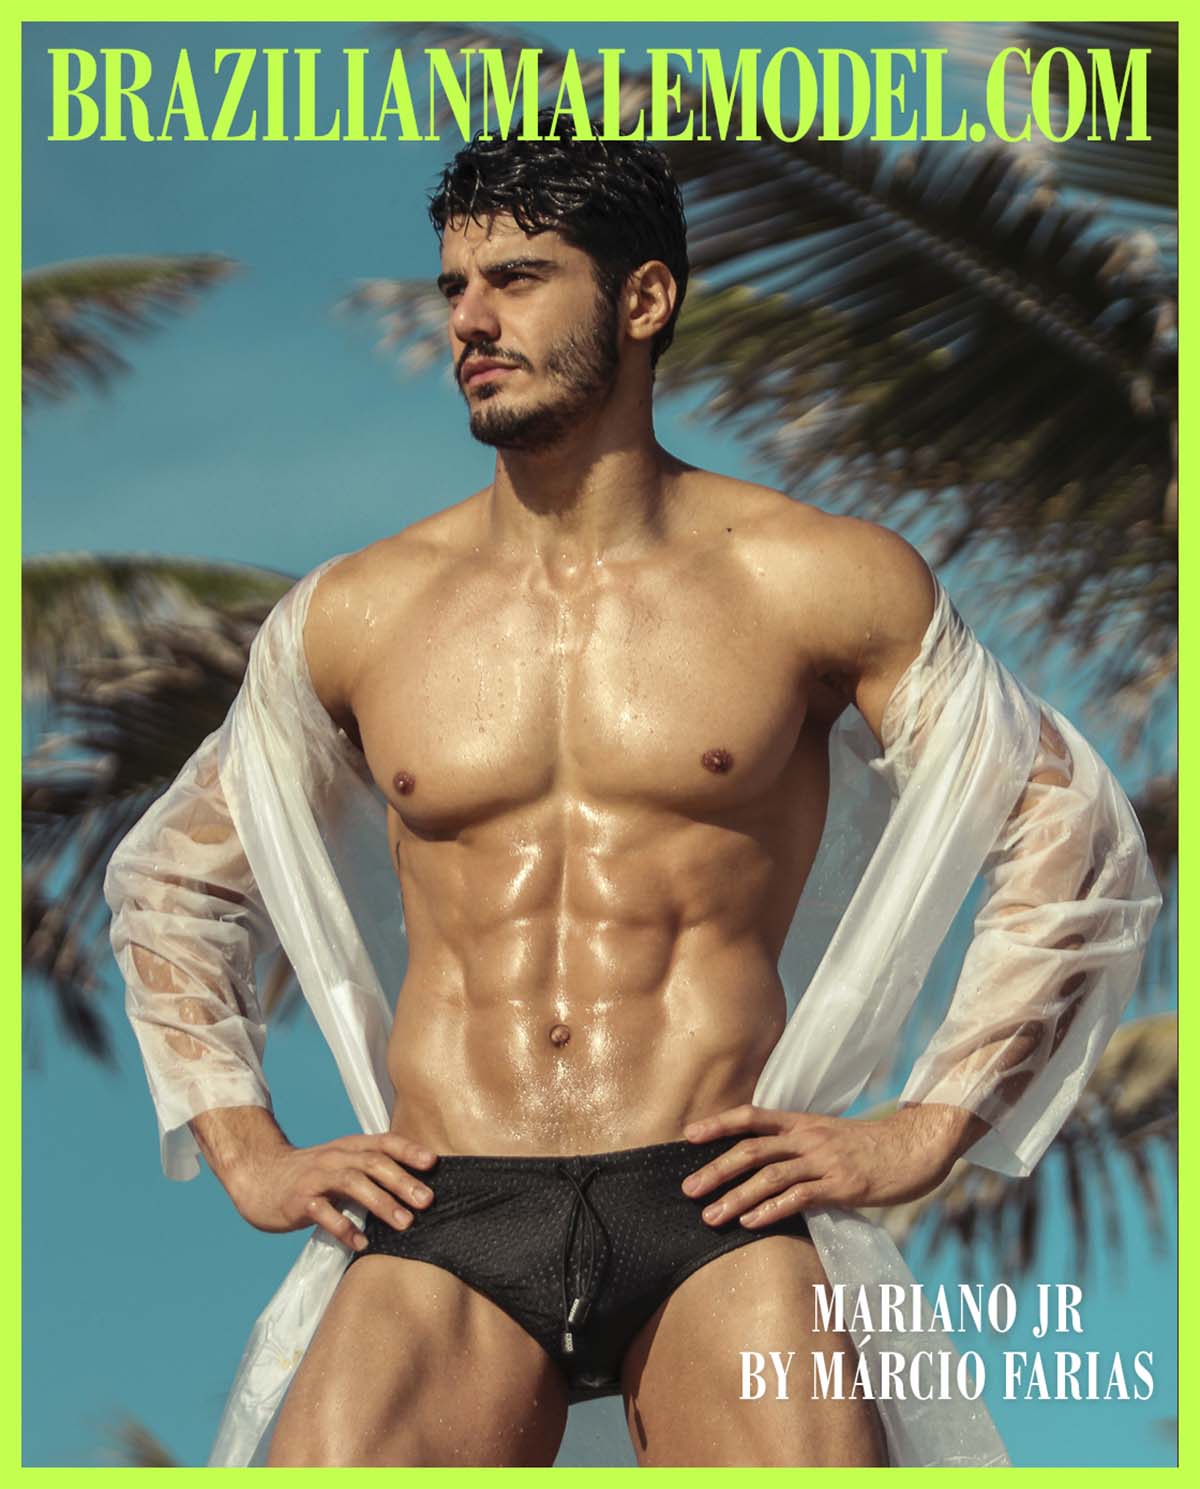 Mariano Jr by Marcio Farias - Brazilian Male Model.